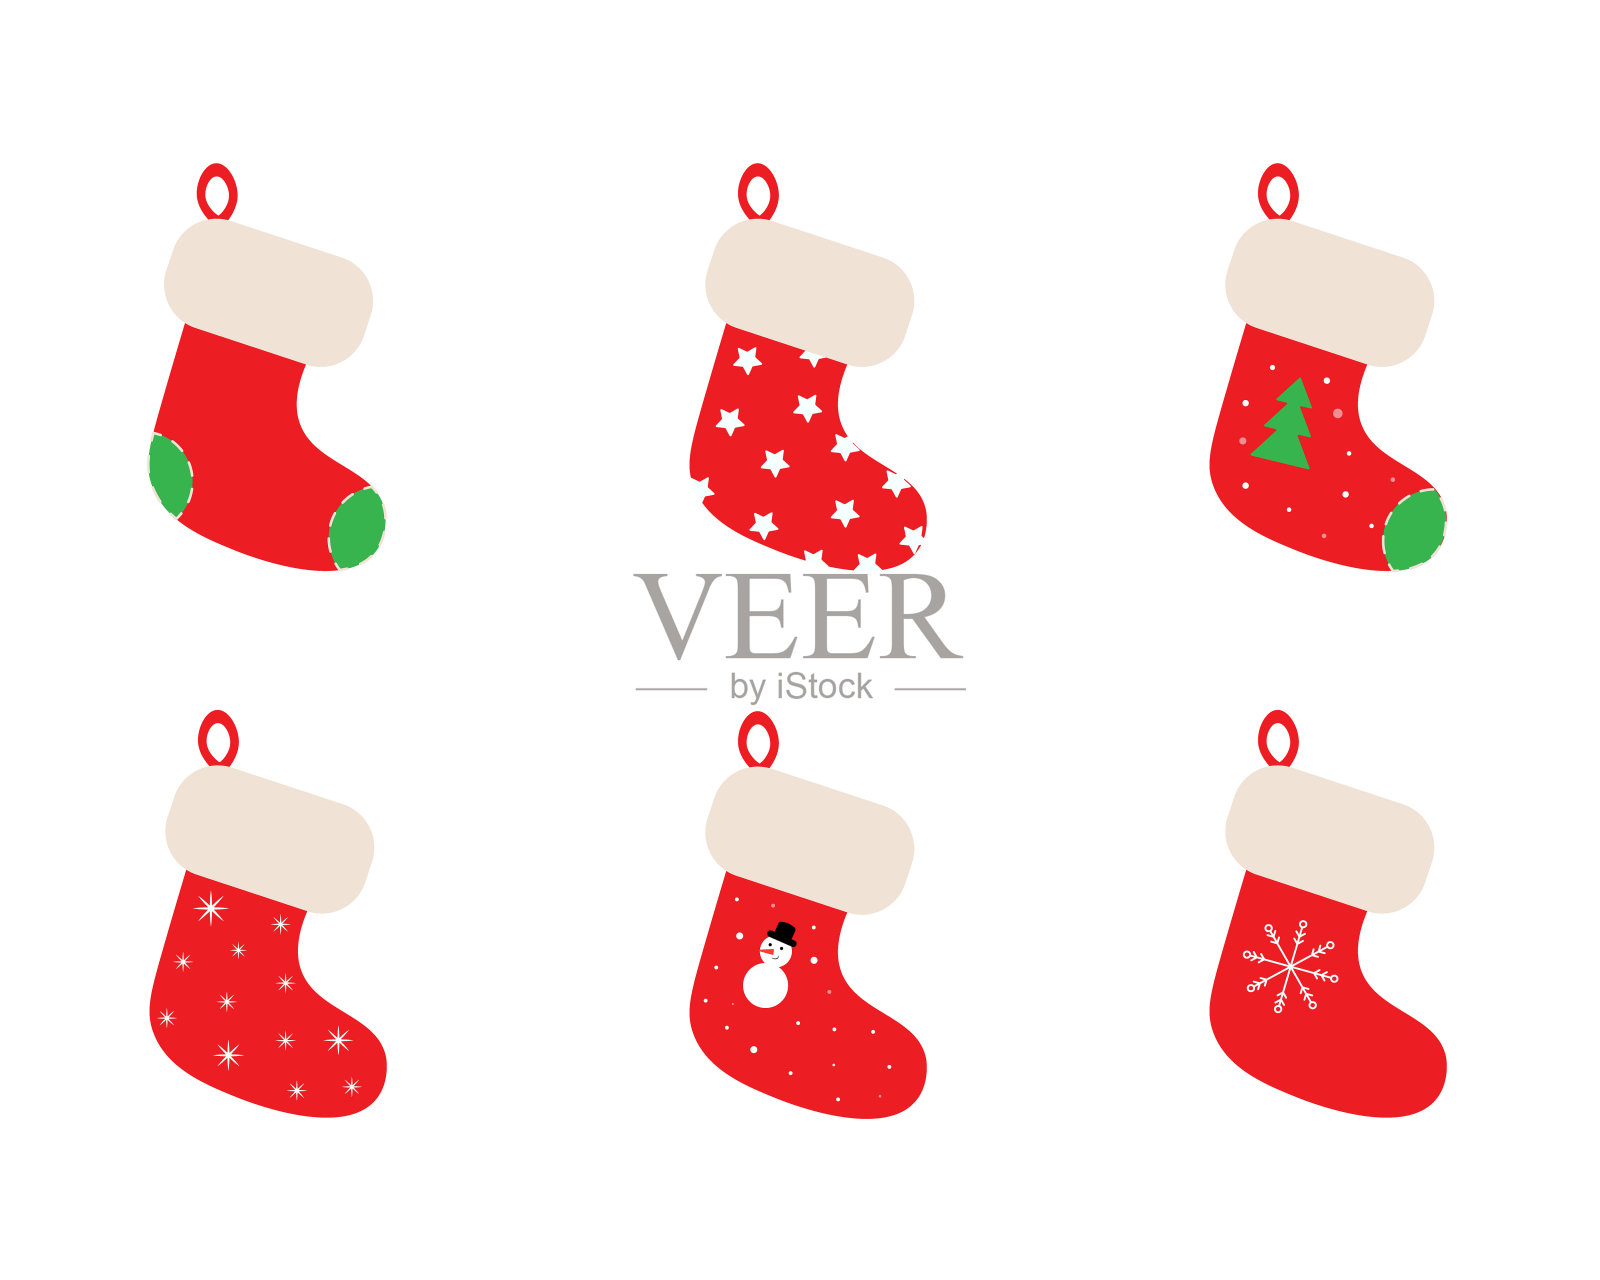 一套可爱的红色圣诞袜插画图片素材